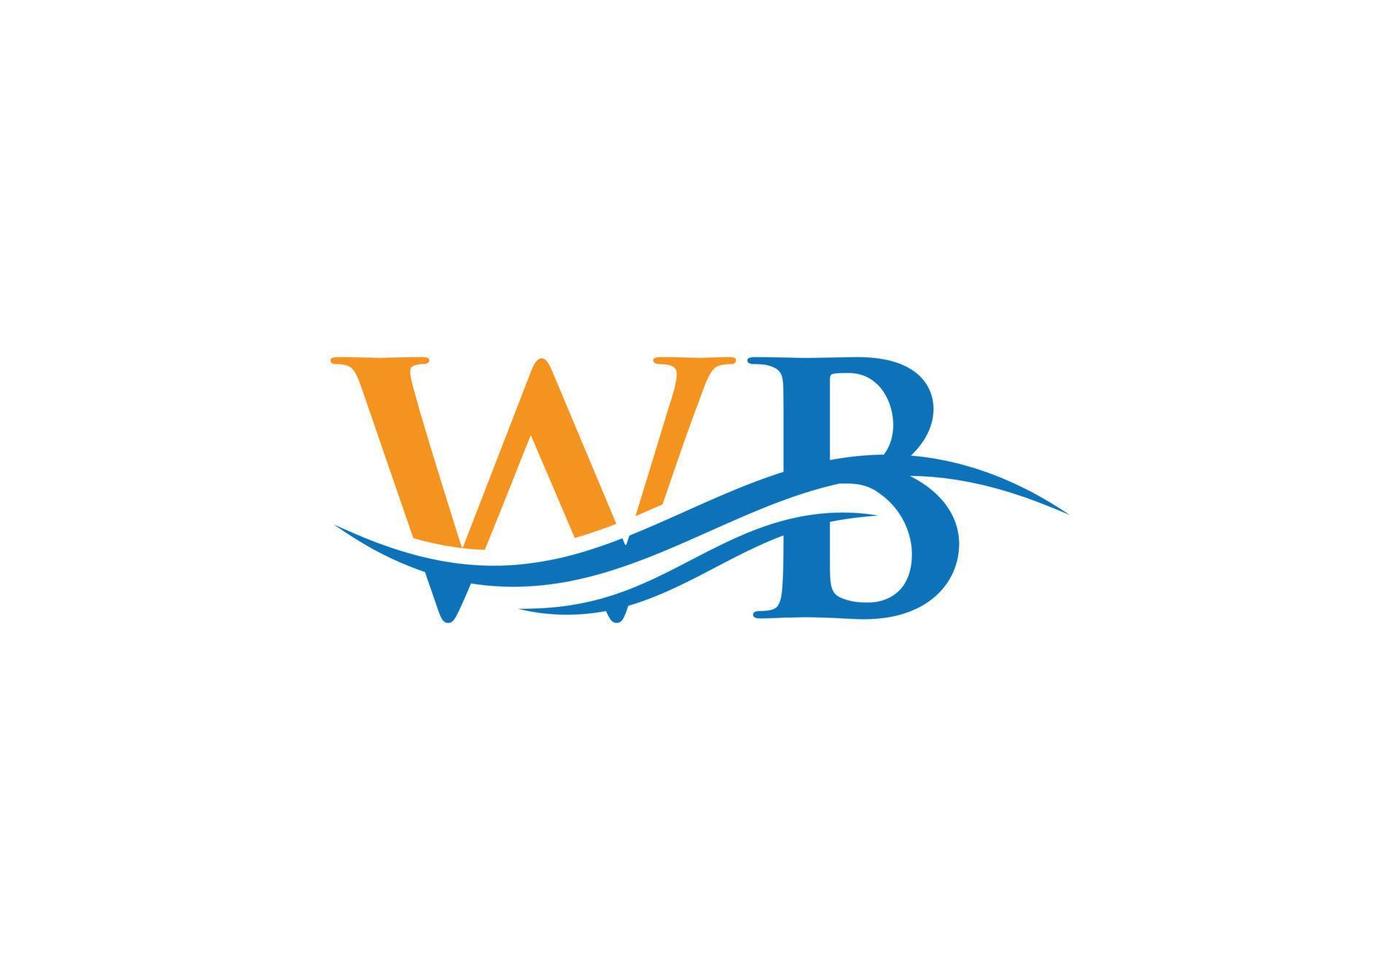 design de logotipo wb de letra swoosh para negócios e identidade da empresa. onda de água logotipo wb vetor